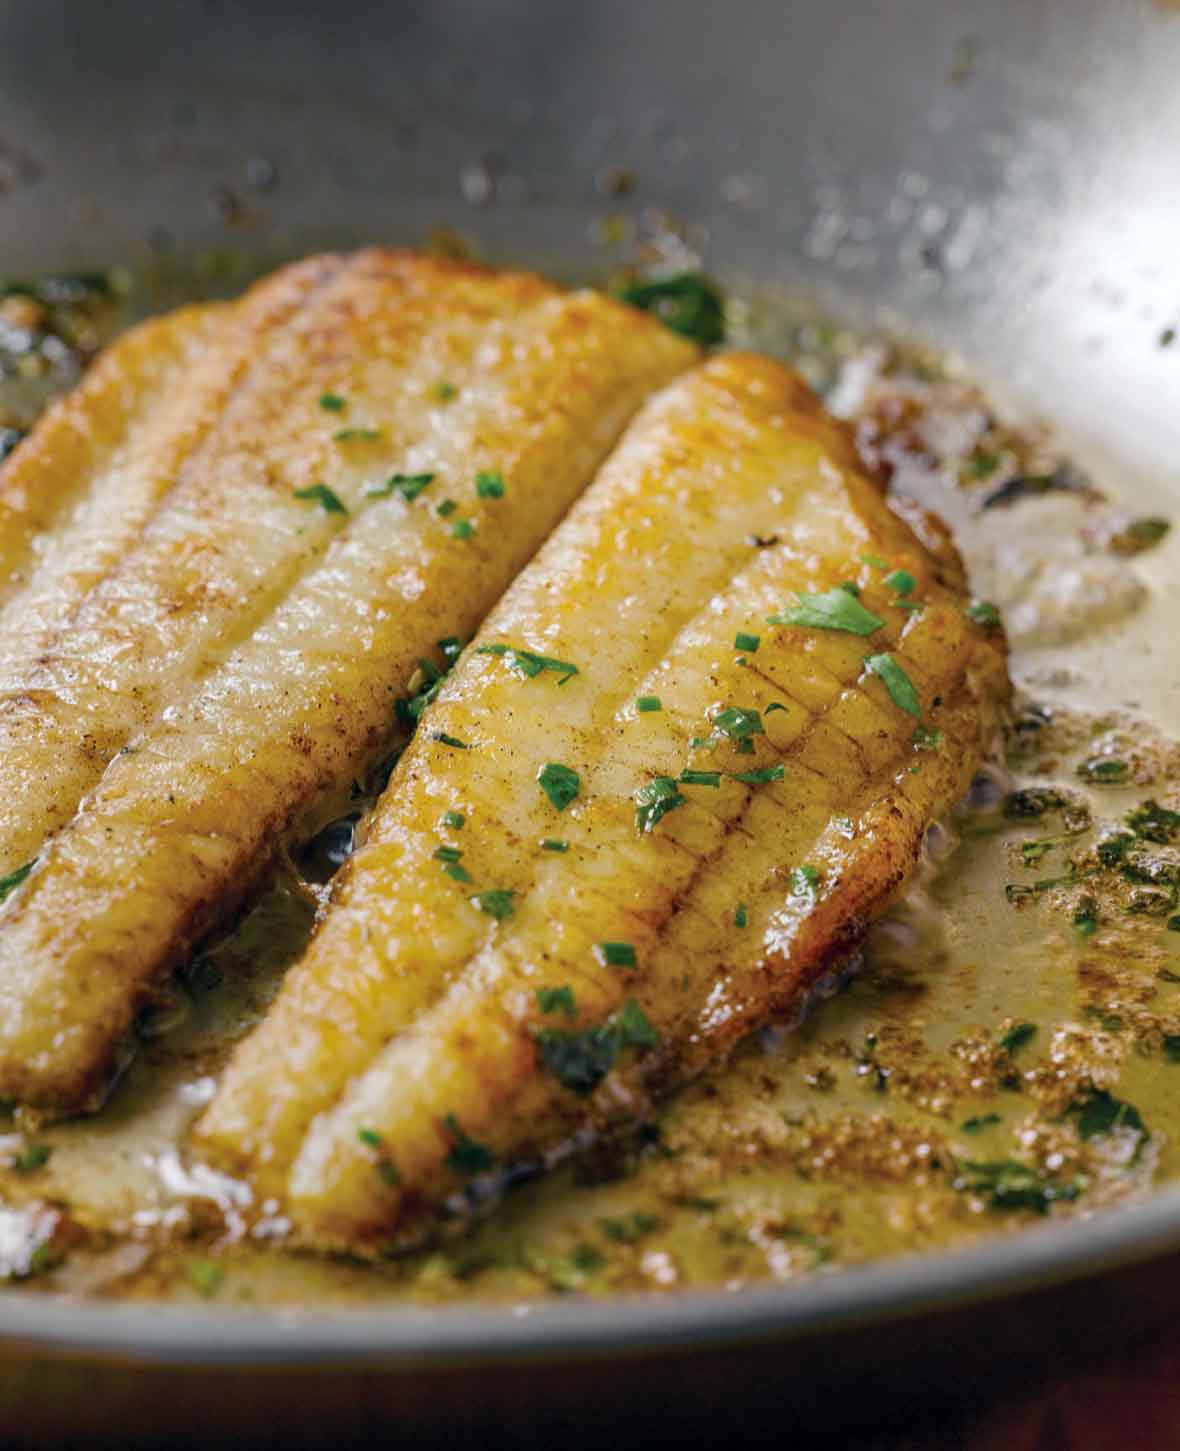 Basecamp reccomend Lightly fried fish fillets